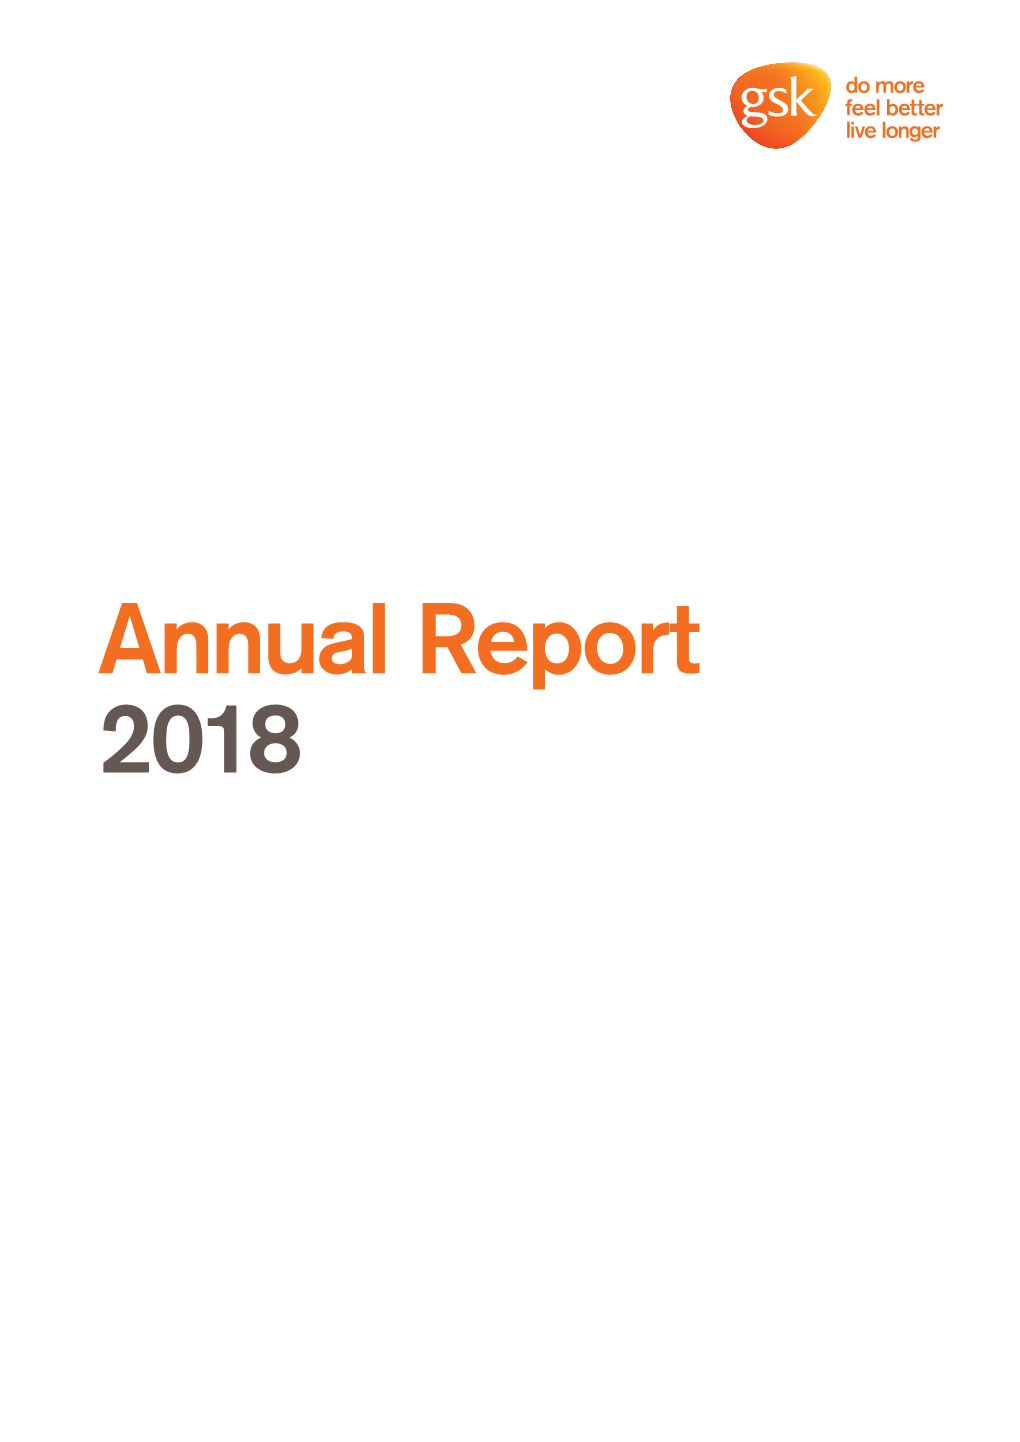 Annual Report 2018 Worldreginfo - B9a893fd-6Aeb-4Cd2-Bb83-16693Ba824a1 GSK Annual Report 2018